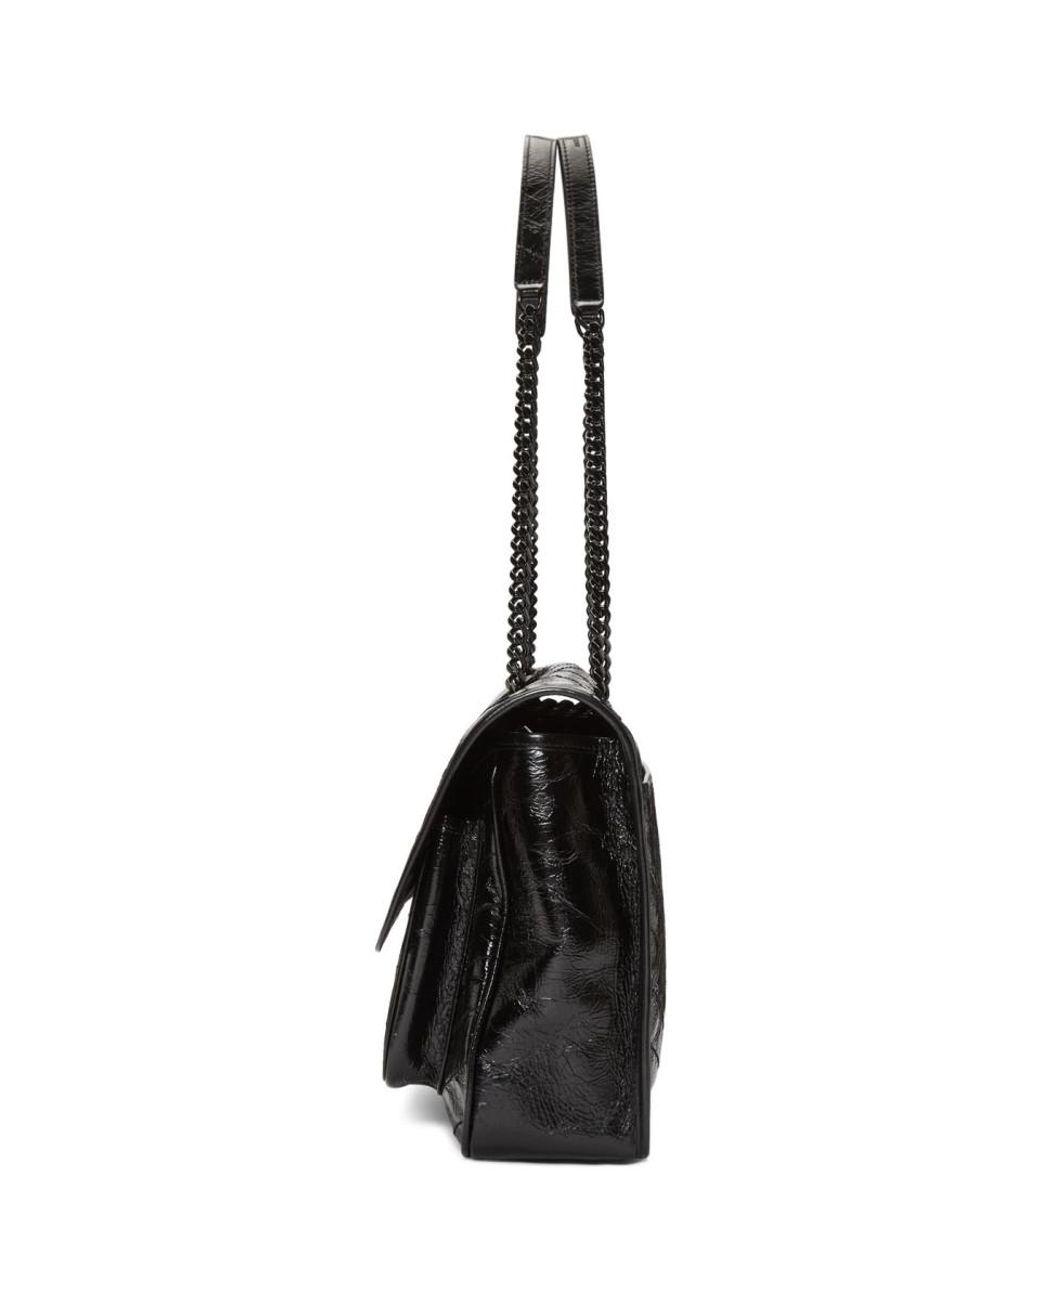 Saint Laurent Niki Large Leather Shoulder Bag - Black